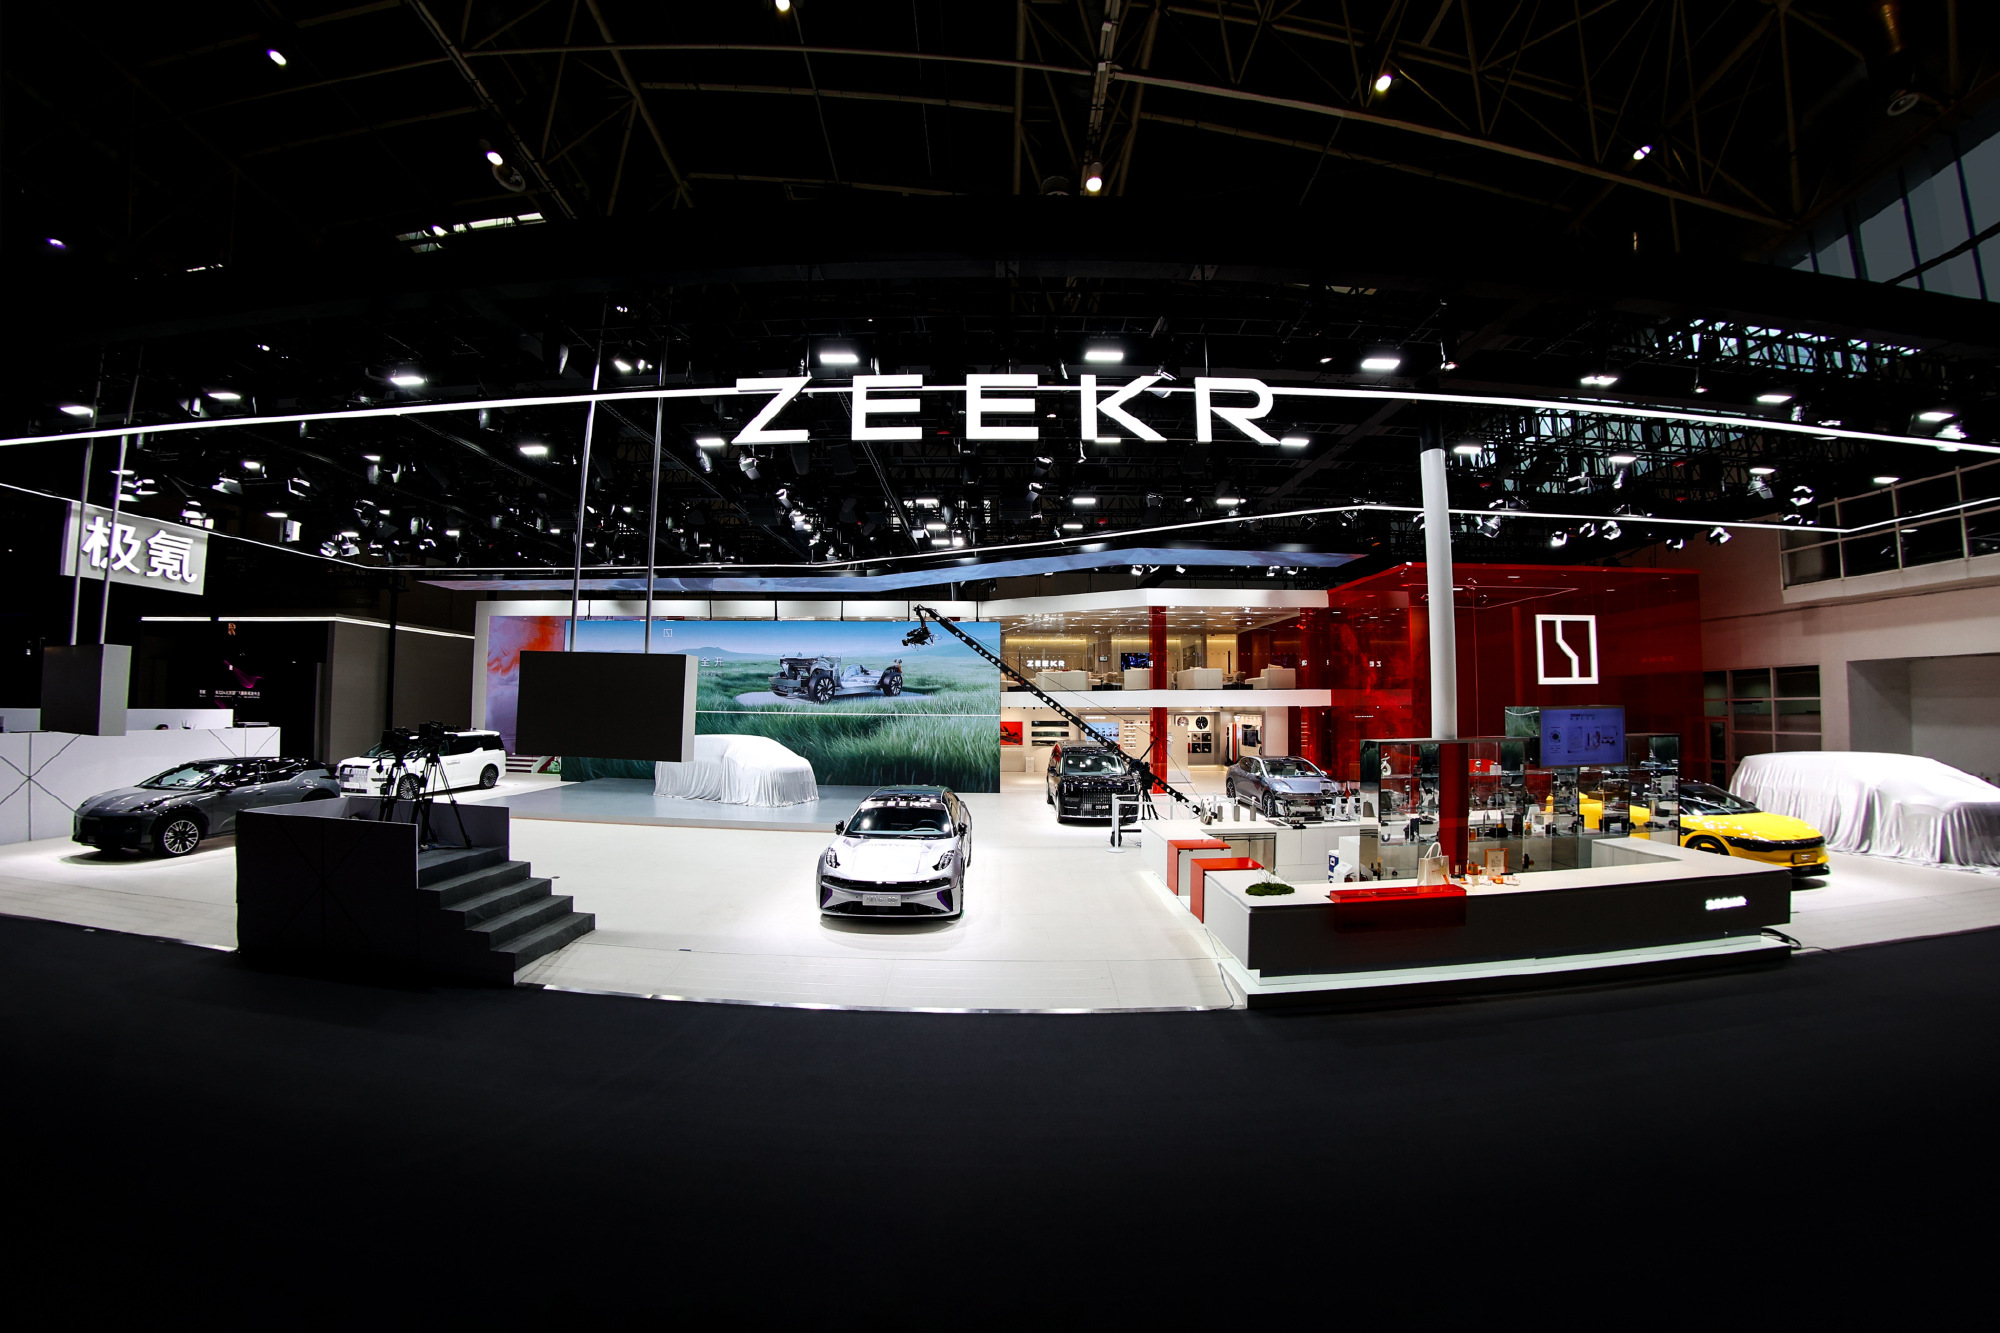 大陆汽车制造商吉利旗下高端电动车品牌极氪（Zeekr），正寻求在美国首次公开募股（IPO），拟筹资3.675亿美元（约118.67亿台币）。（取自极氪官方微博）